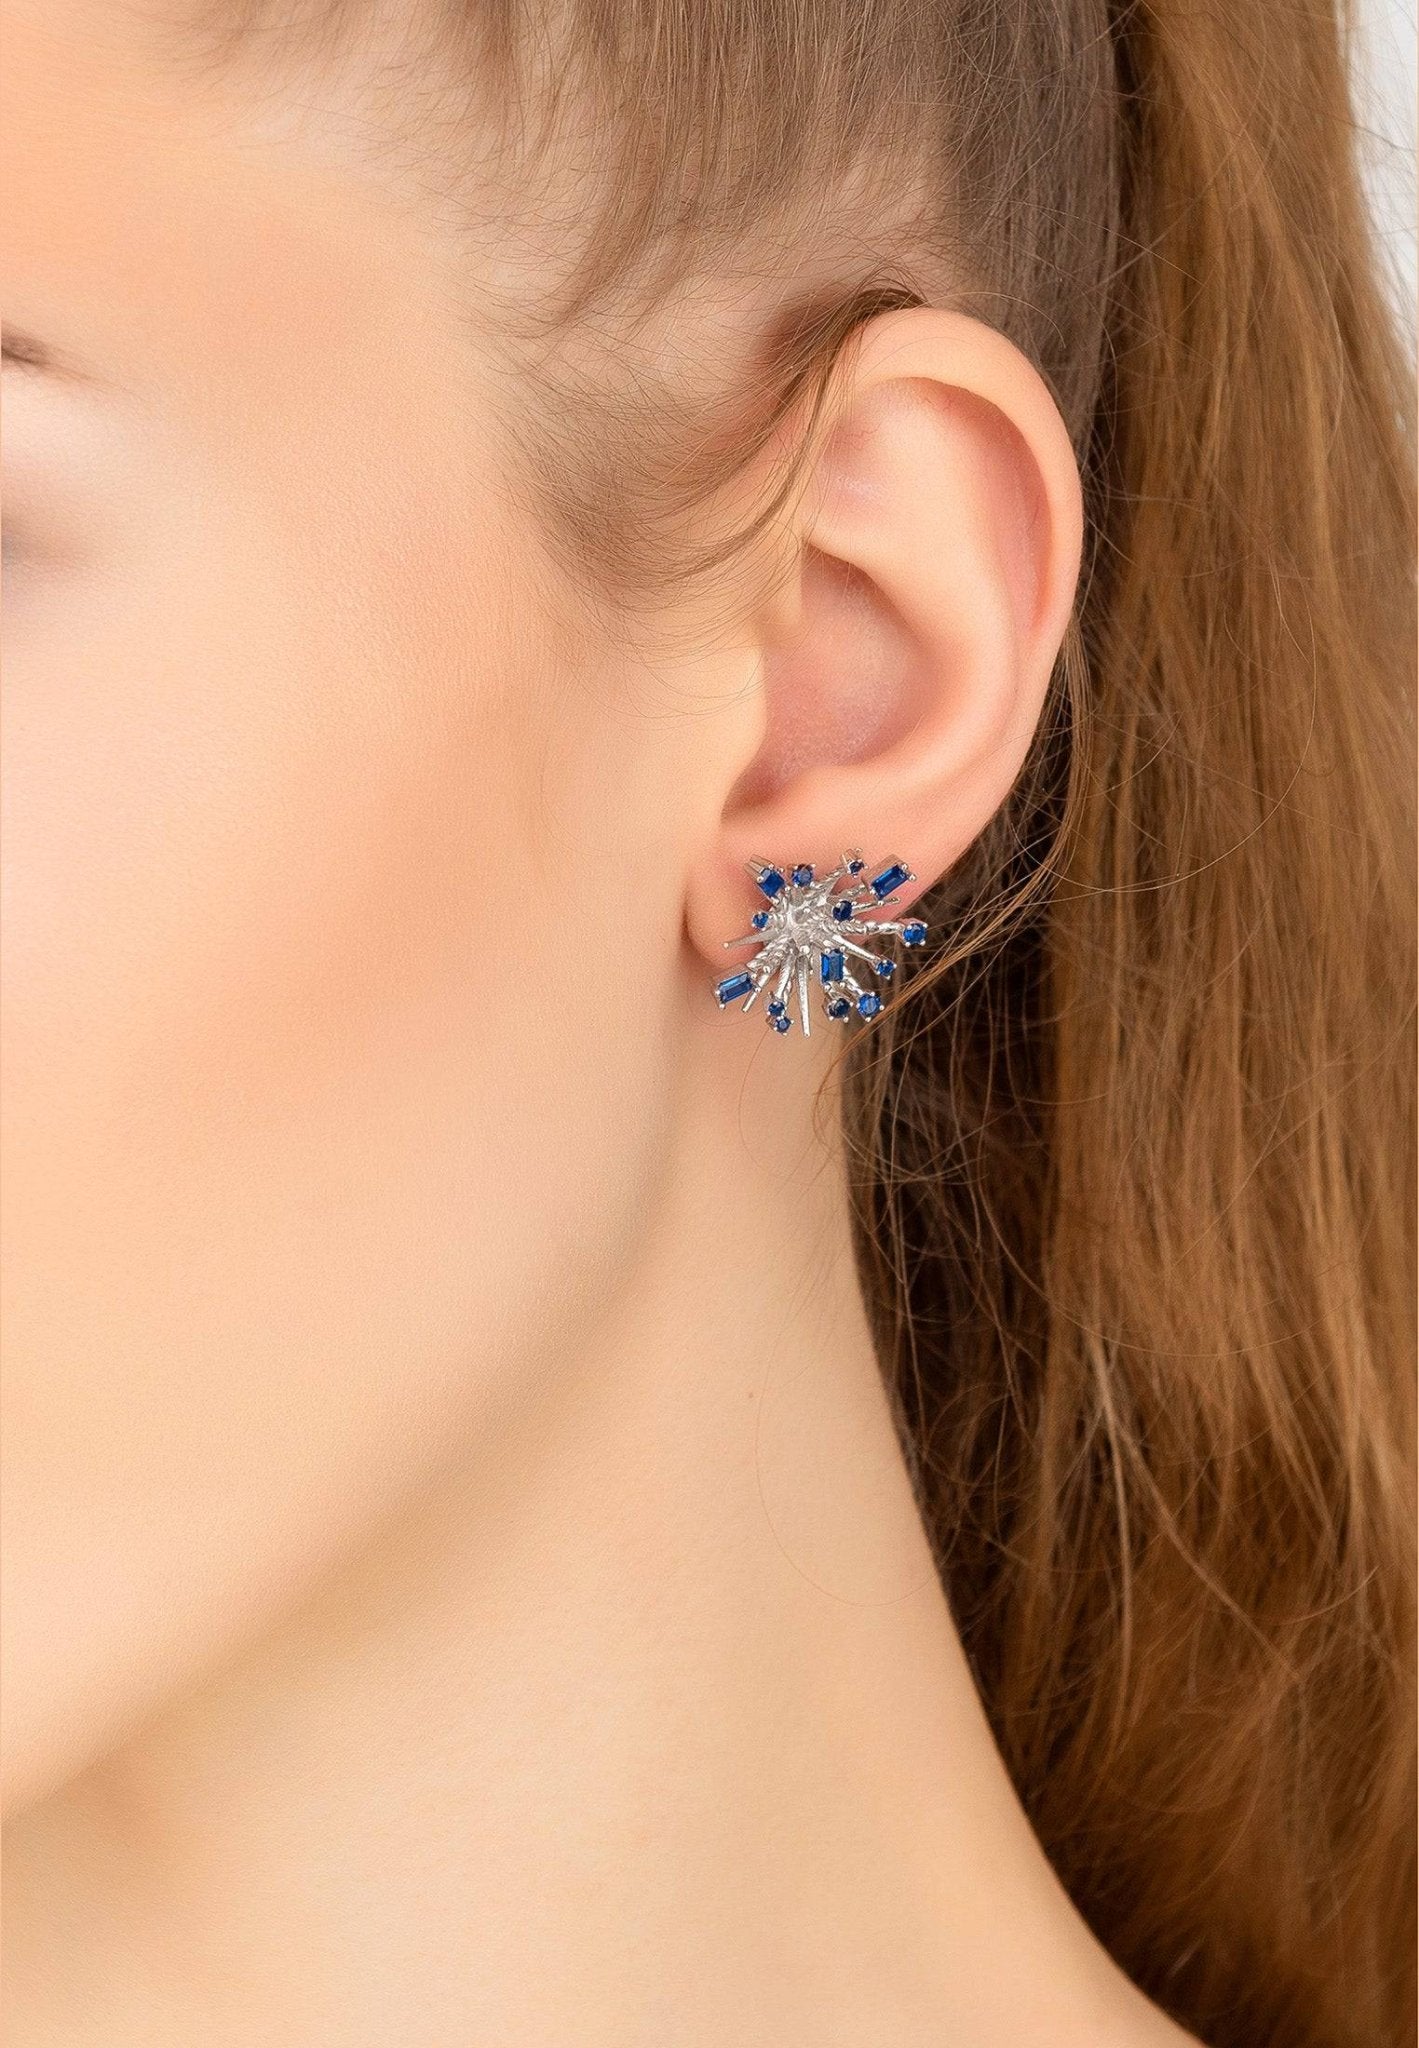 Cosmic Bang Baguette Cz Stud Earrings Sapphire Blue Cz Silver - LATELITA Earrings